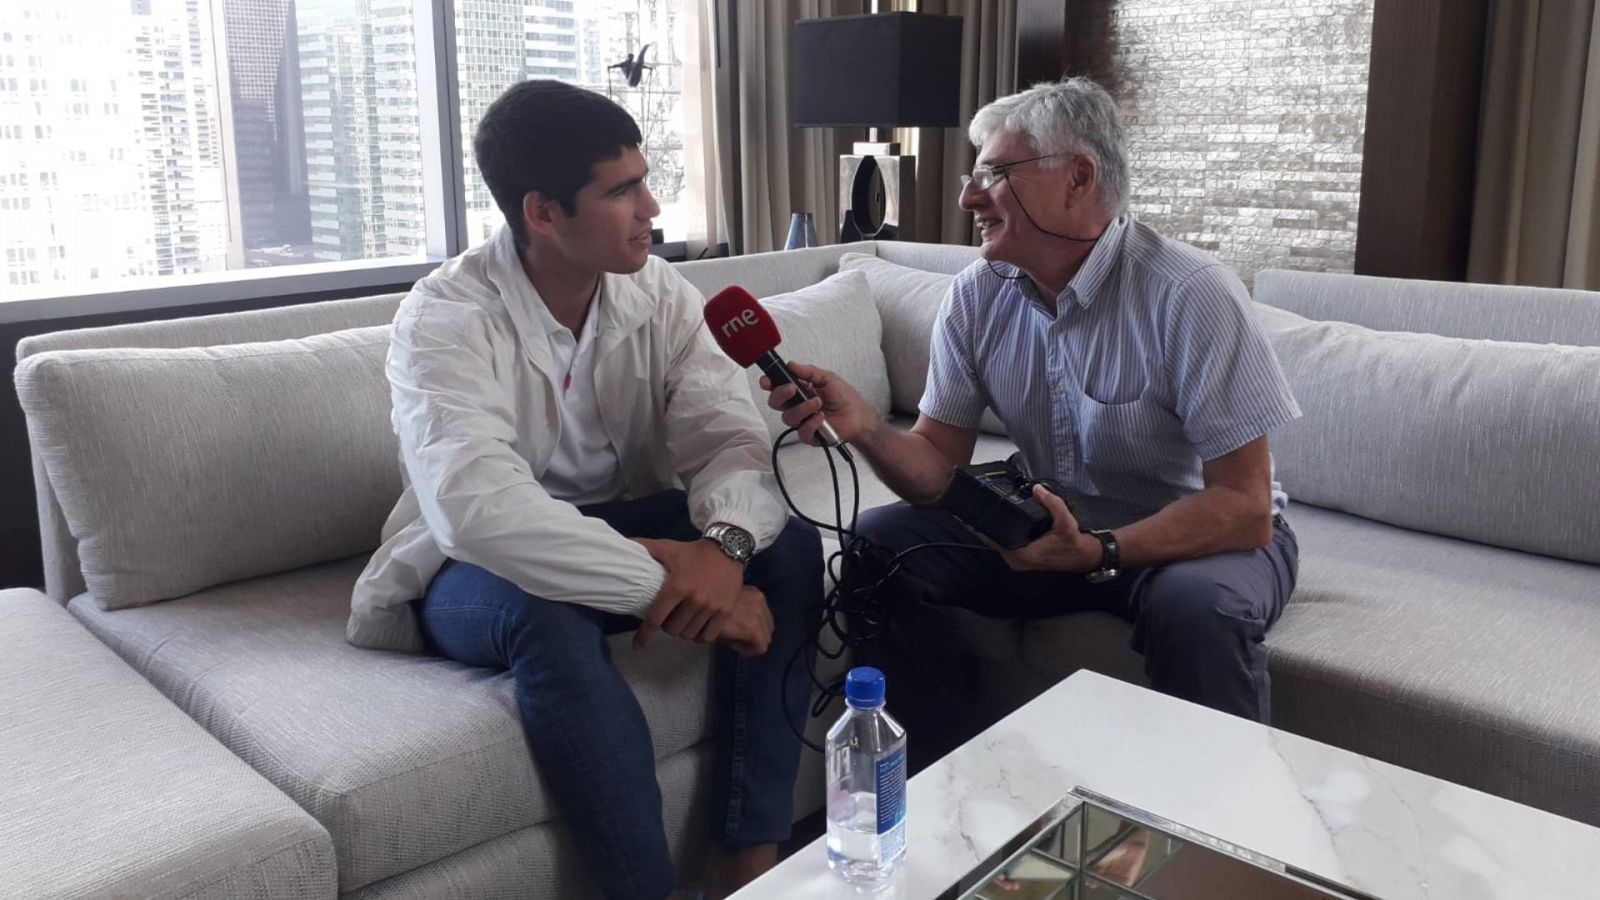 Radiogaceta de los deportes - Carlos Alcaraz: "Es increíble ser el número uno del mundo" - Escuchar ahora